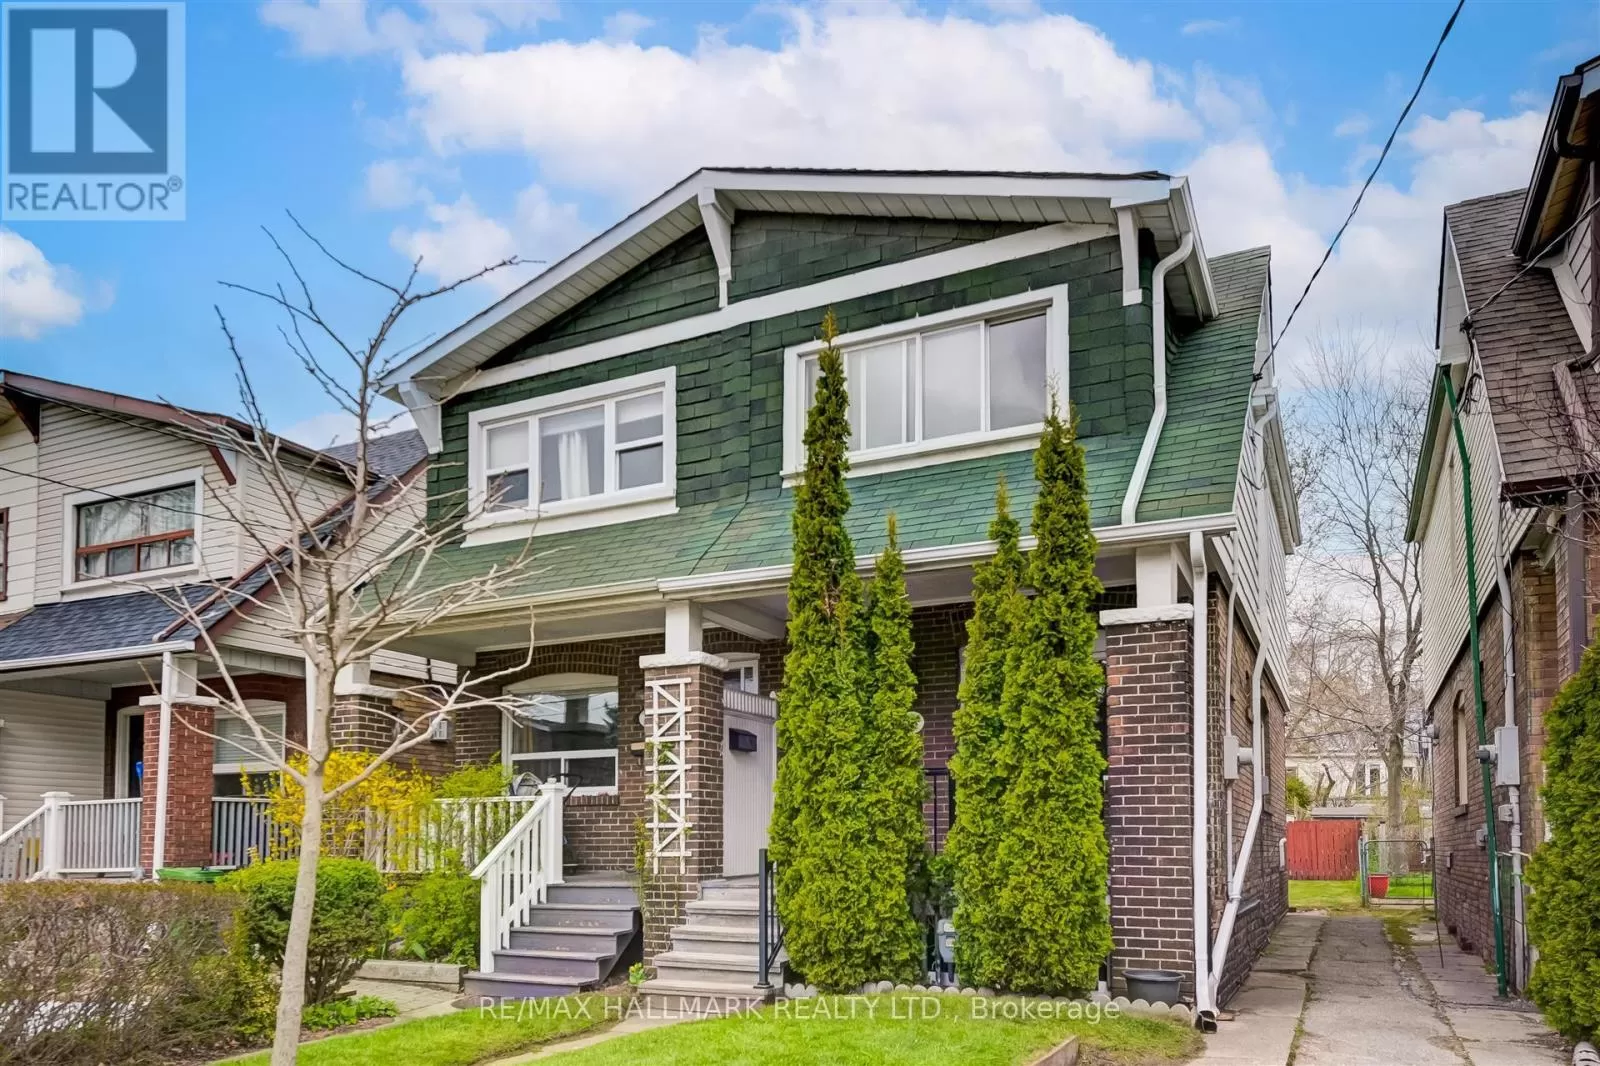 House for rent: 56 Mortimer Avenue, Toronto, Ontario M4K 2A1